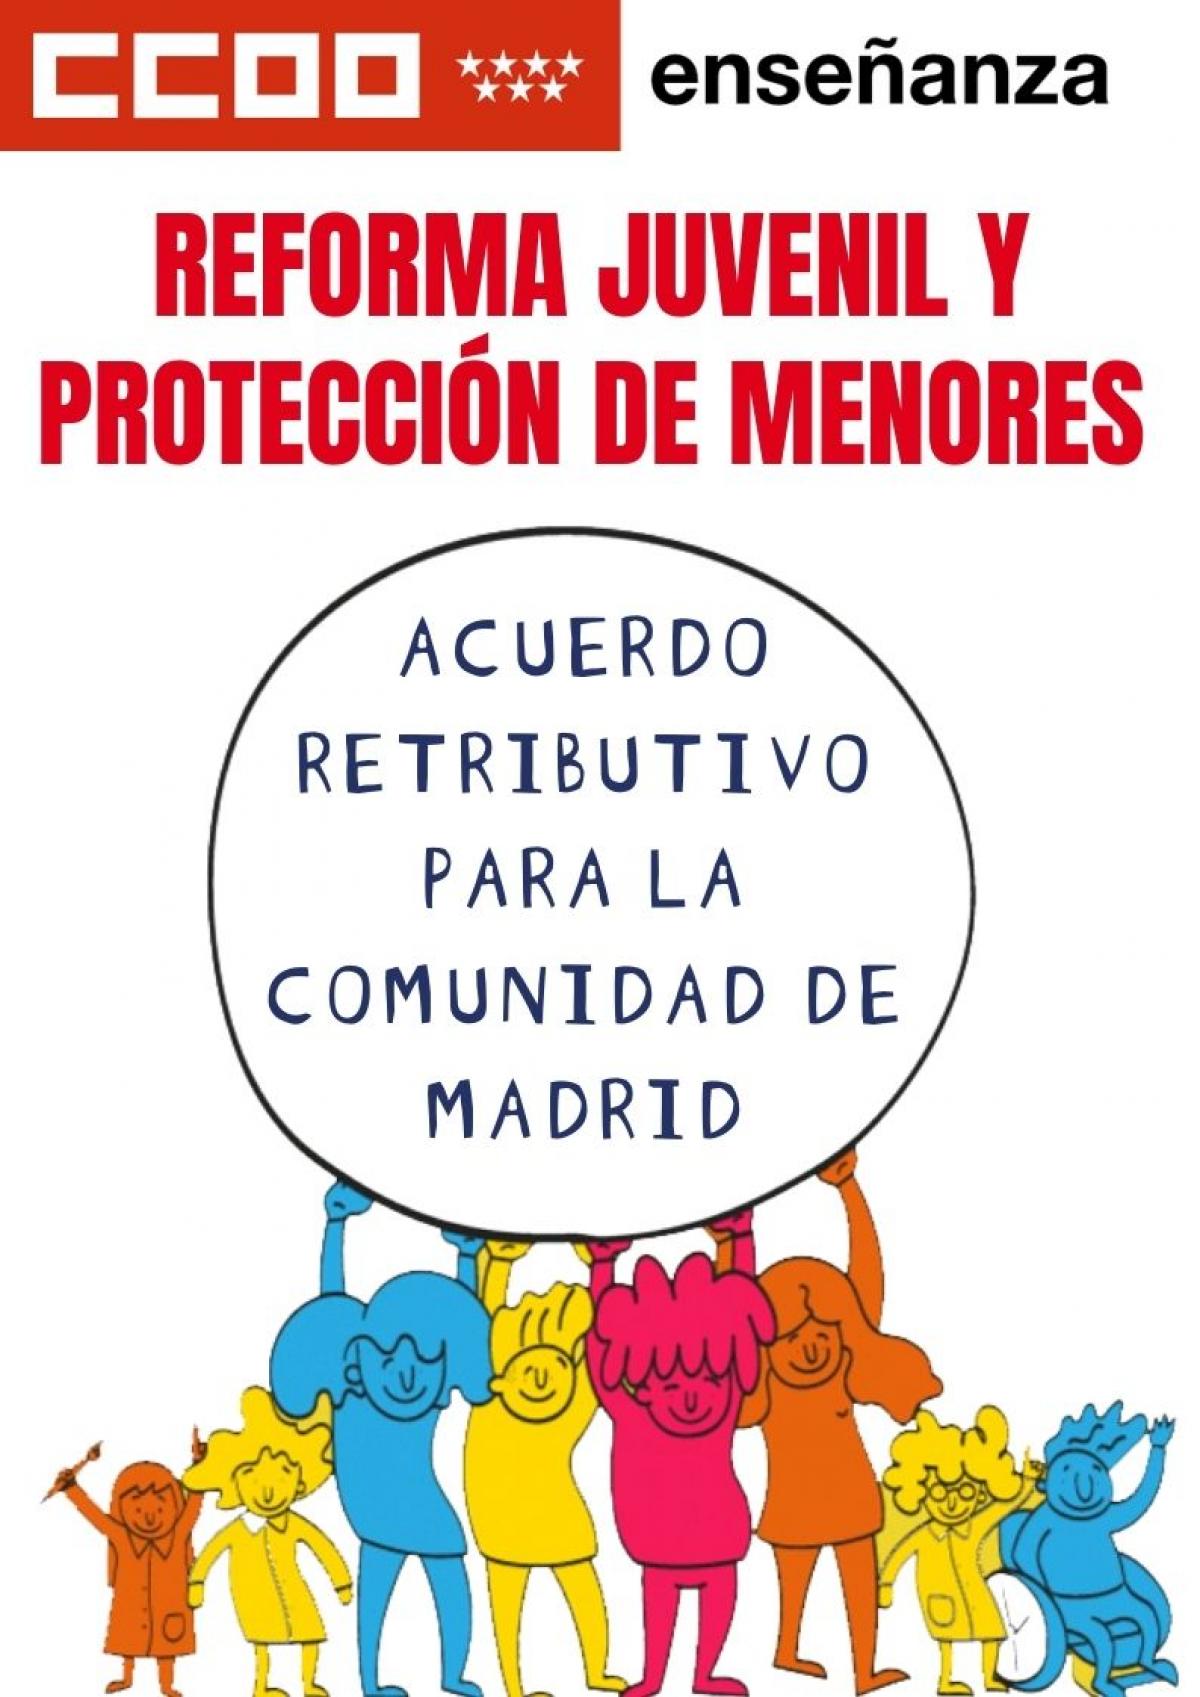 Acuerdo retributivo de Reforma Juvenil y Proteccin de Menores en la Comunidad de Madrid